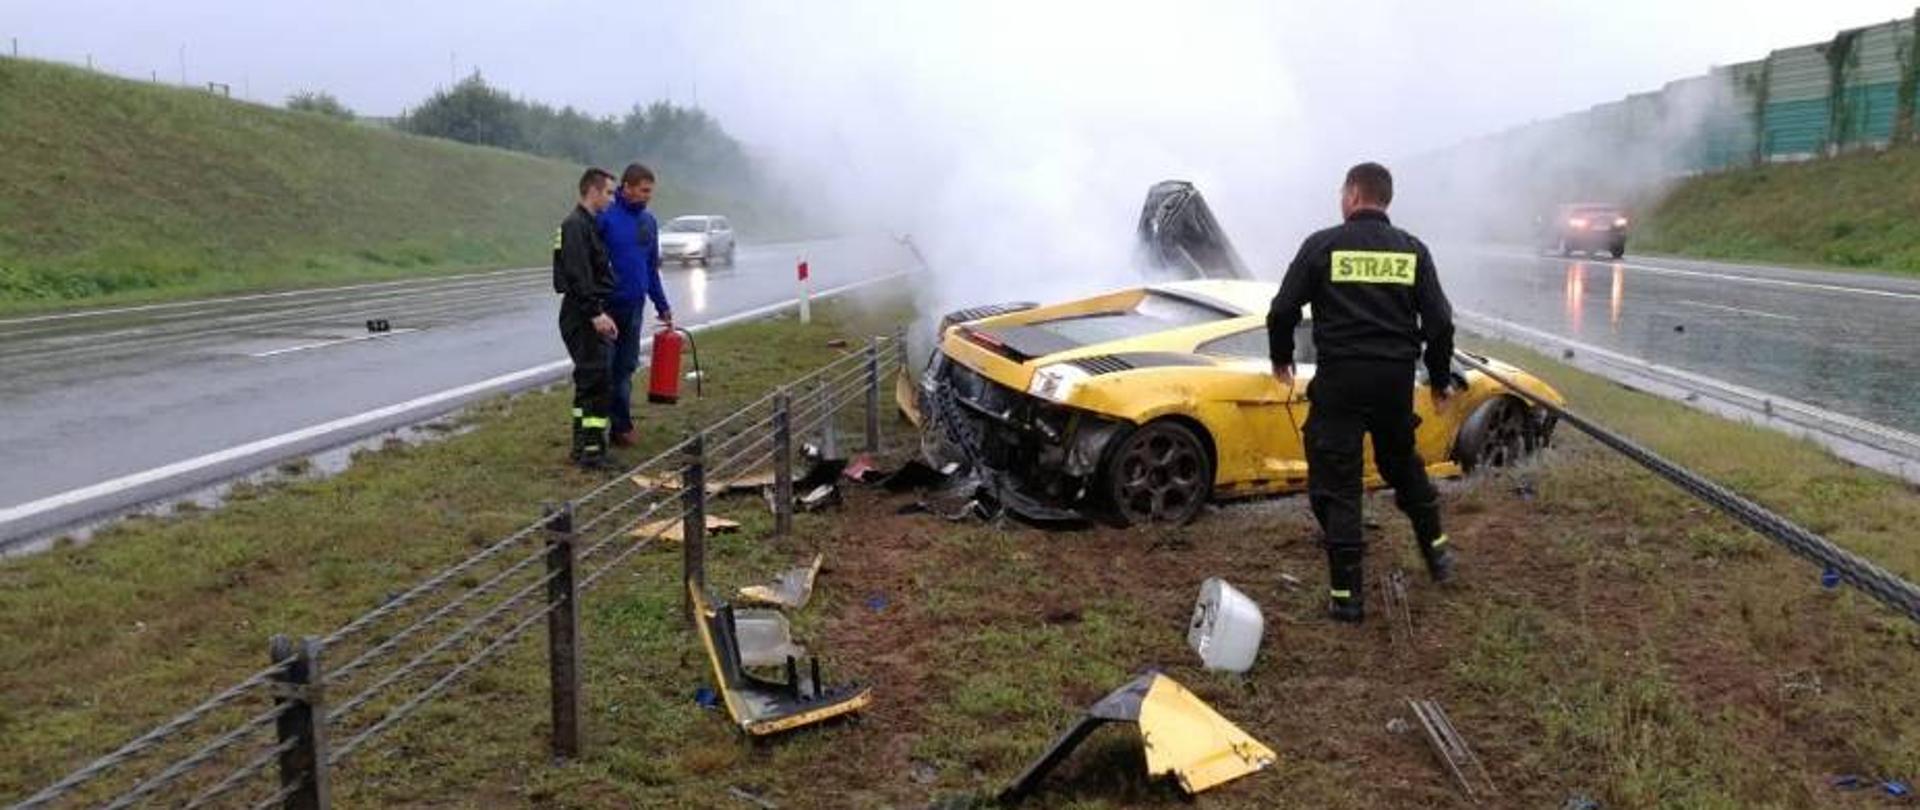 Zdjęcie przedstawia trzy osoby, dwie z nich w mundurach strażackich, jedna ubrana po cywilnemu trzyma gaśnicę w ręku przy dymiącym się żółtym samochodzie marki Lamborghini i jego kawałkach rozrzuconych na poboczu autostrady A1.